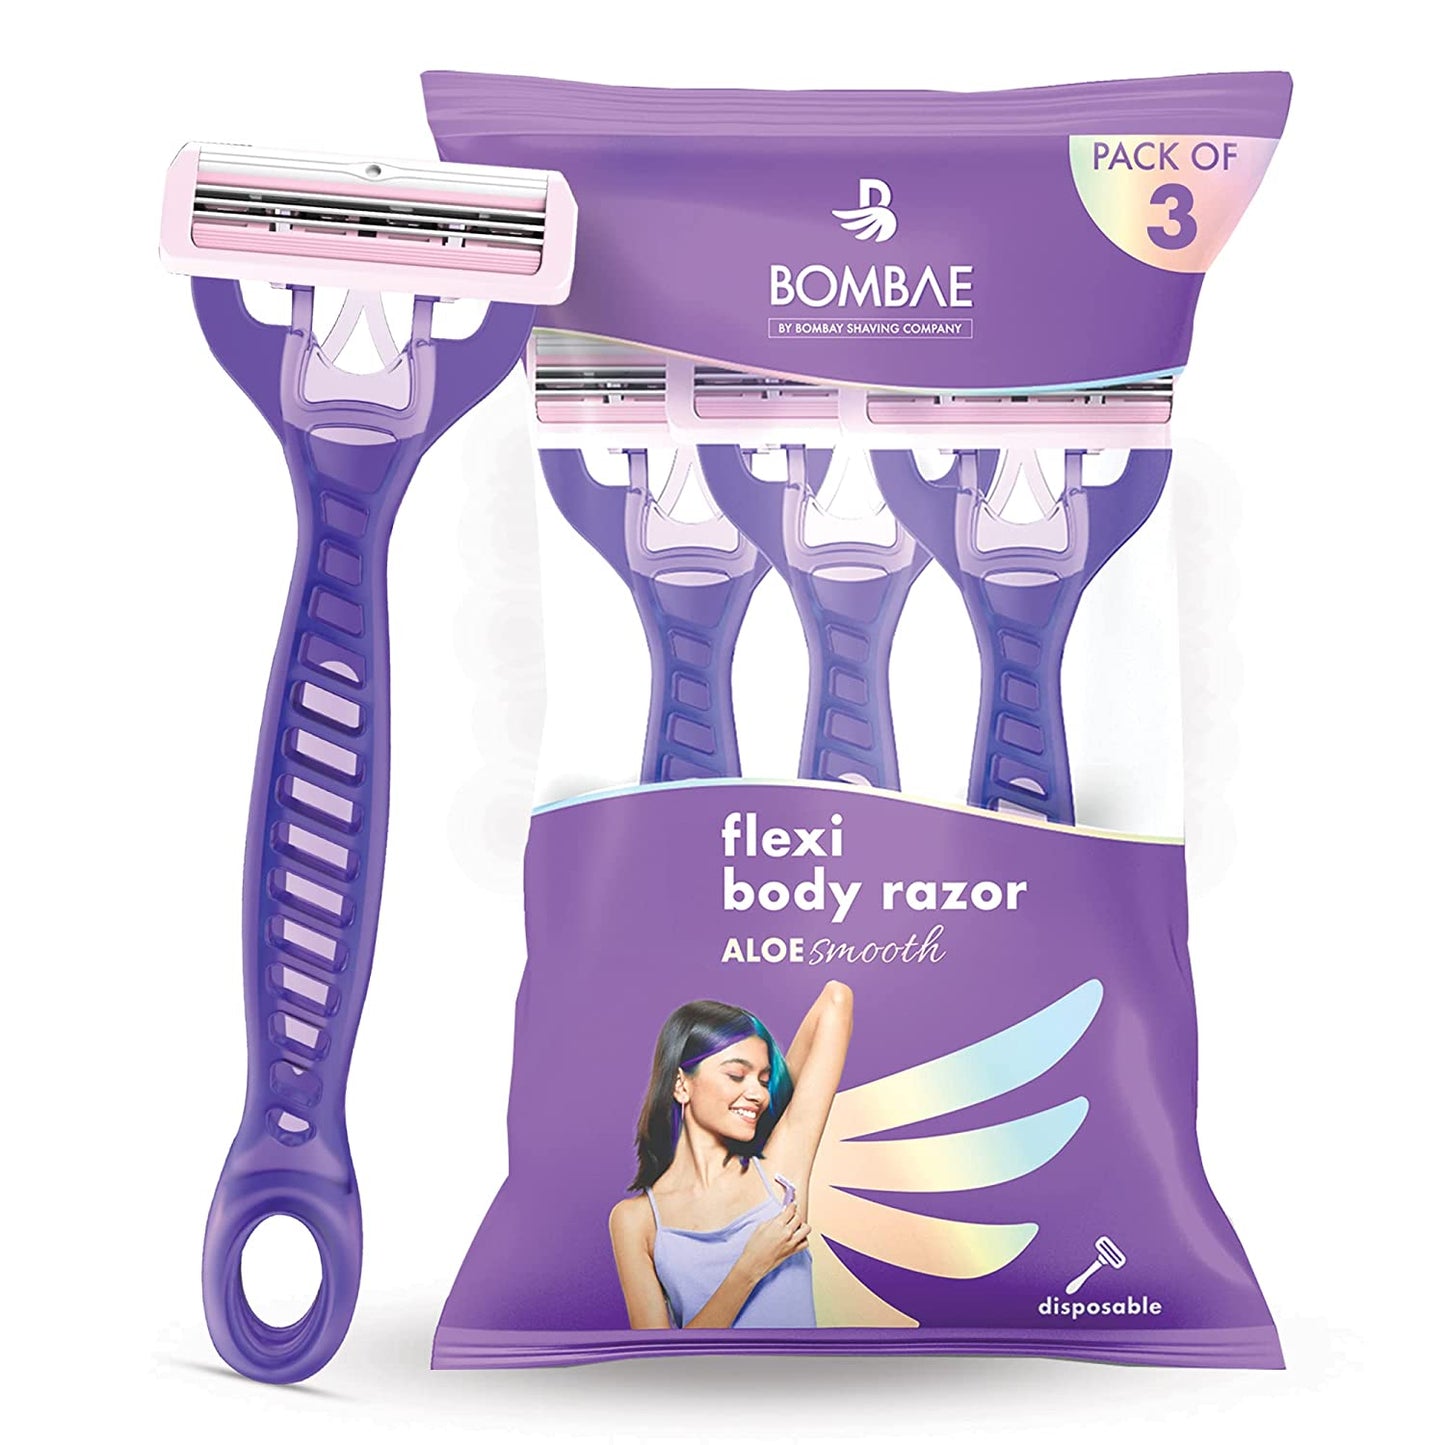 Bombae Flexi Body Razor For Women with Aloe Vera and Vitamin E (Pack of 3)